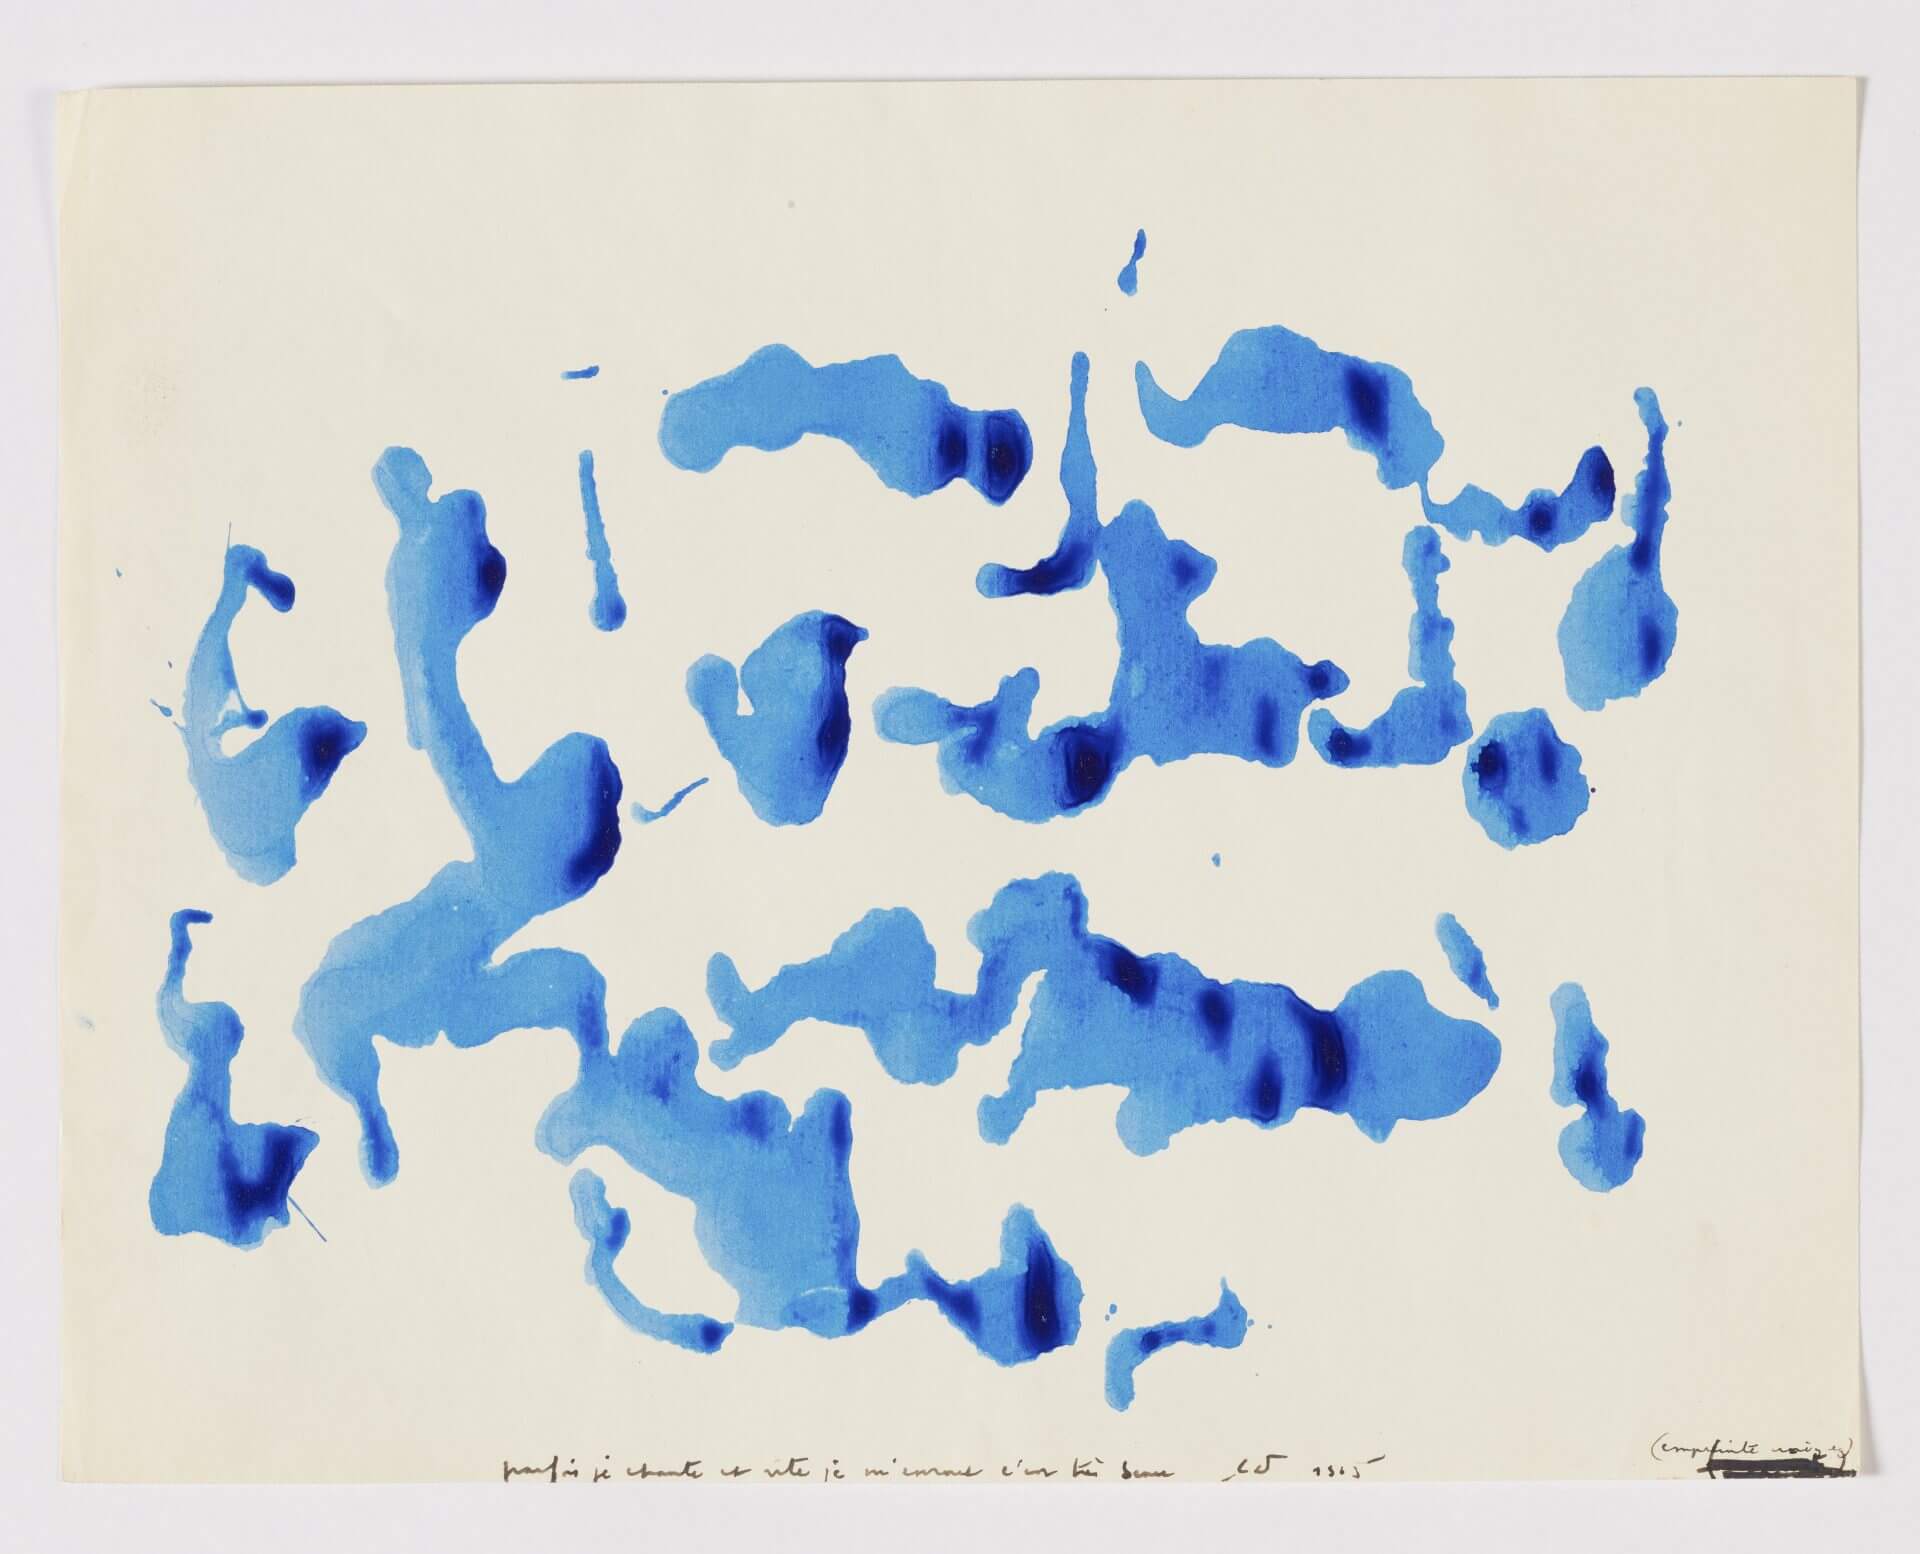  12 www.fine - arts - museum.be # expodotremont @FineArtsBelgium Christian Dotremont P arfois je chante et v ite je m'enroue c'est très beau Encre bleue sur papier 21 x 27 cm 1965